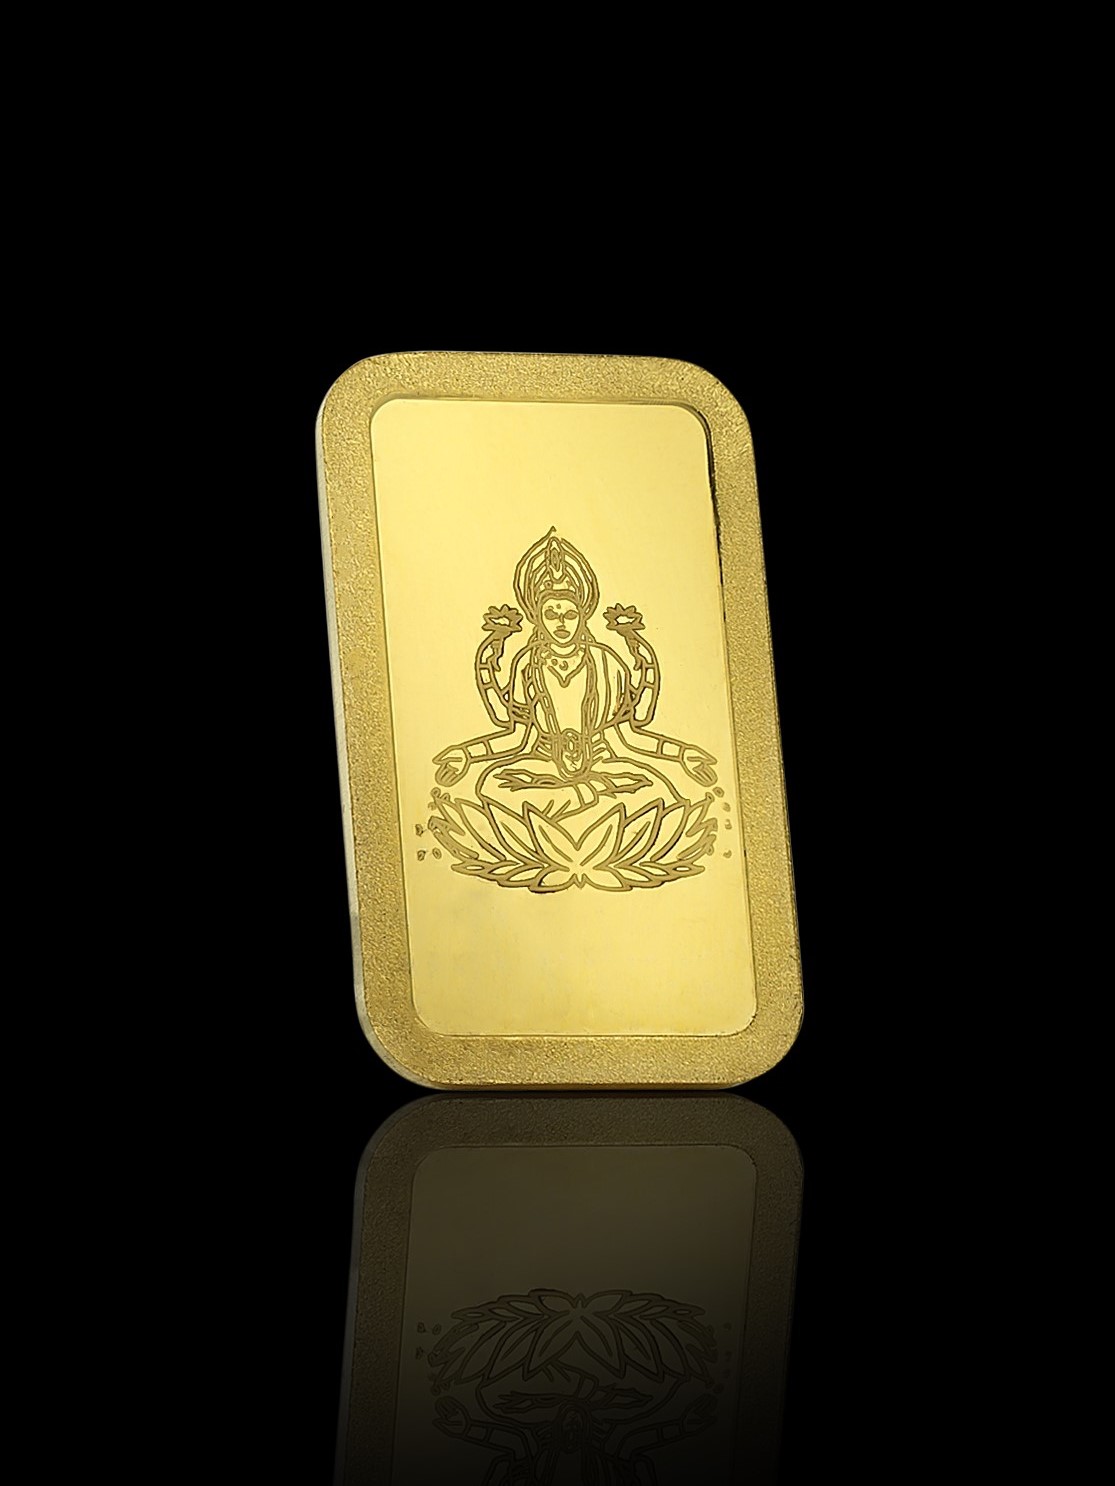 5 g Lakshmi CPG Minted Gold Bullion 99.99% Pure